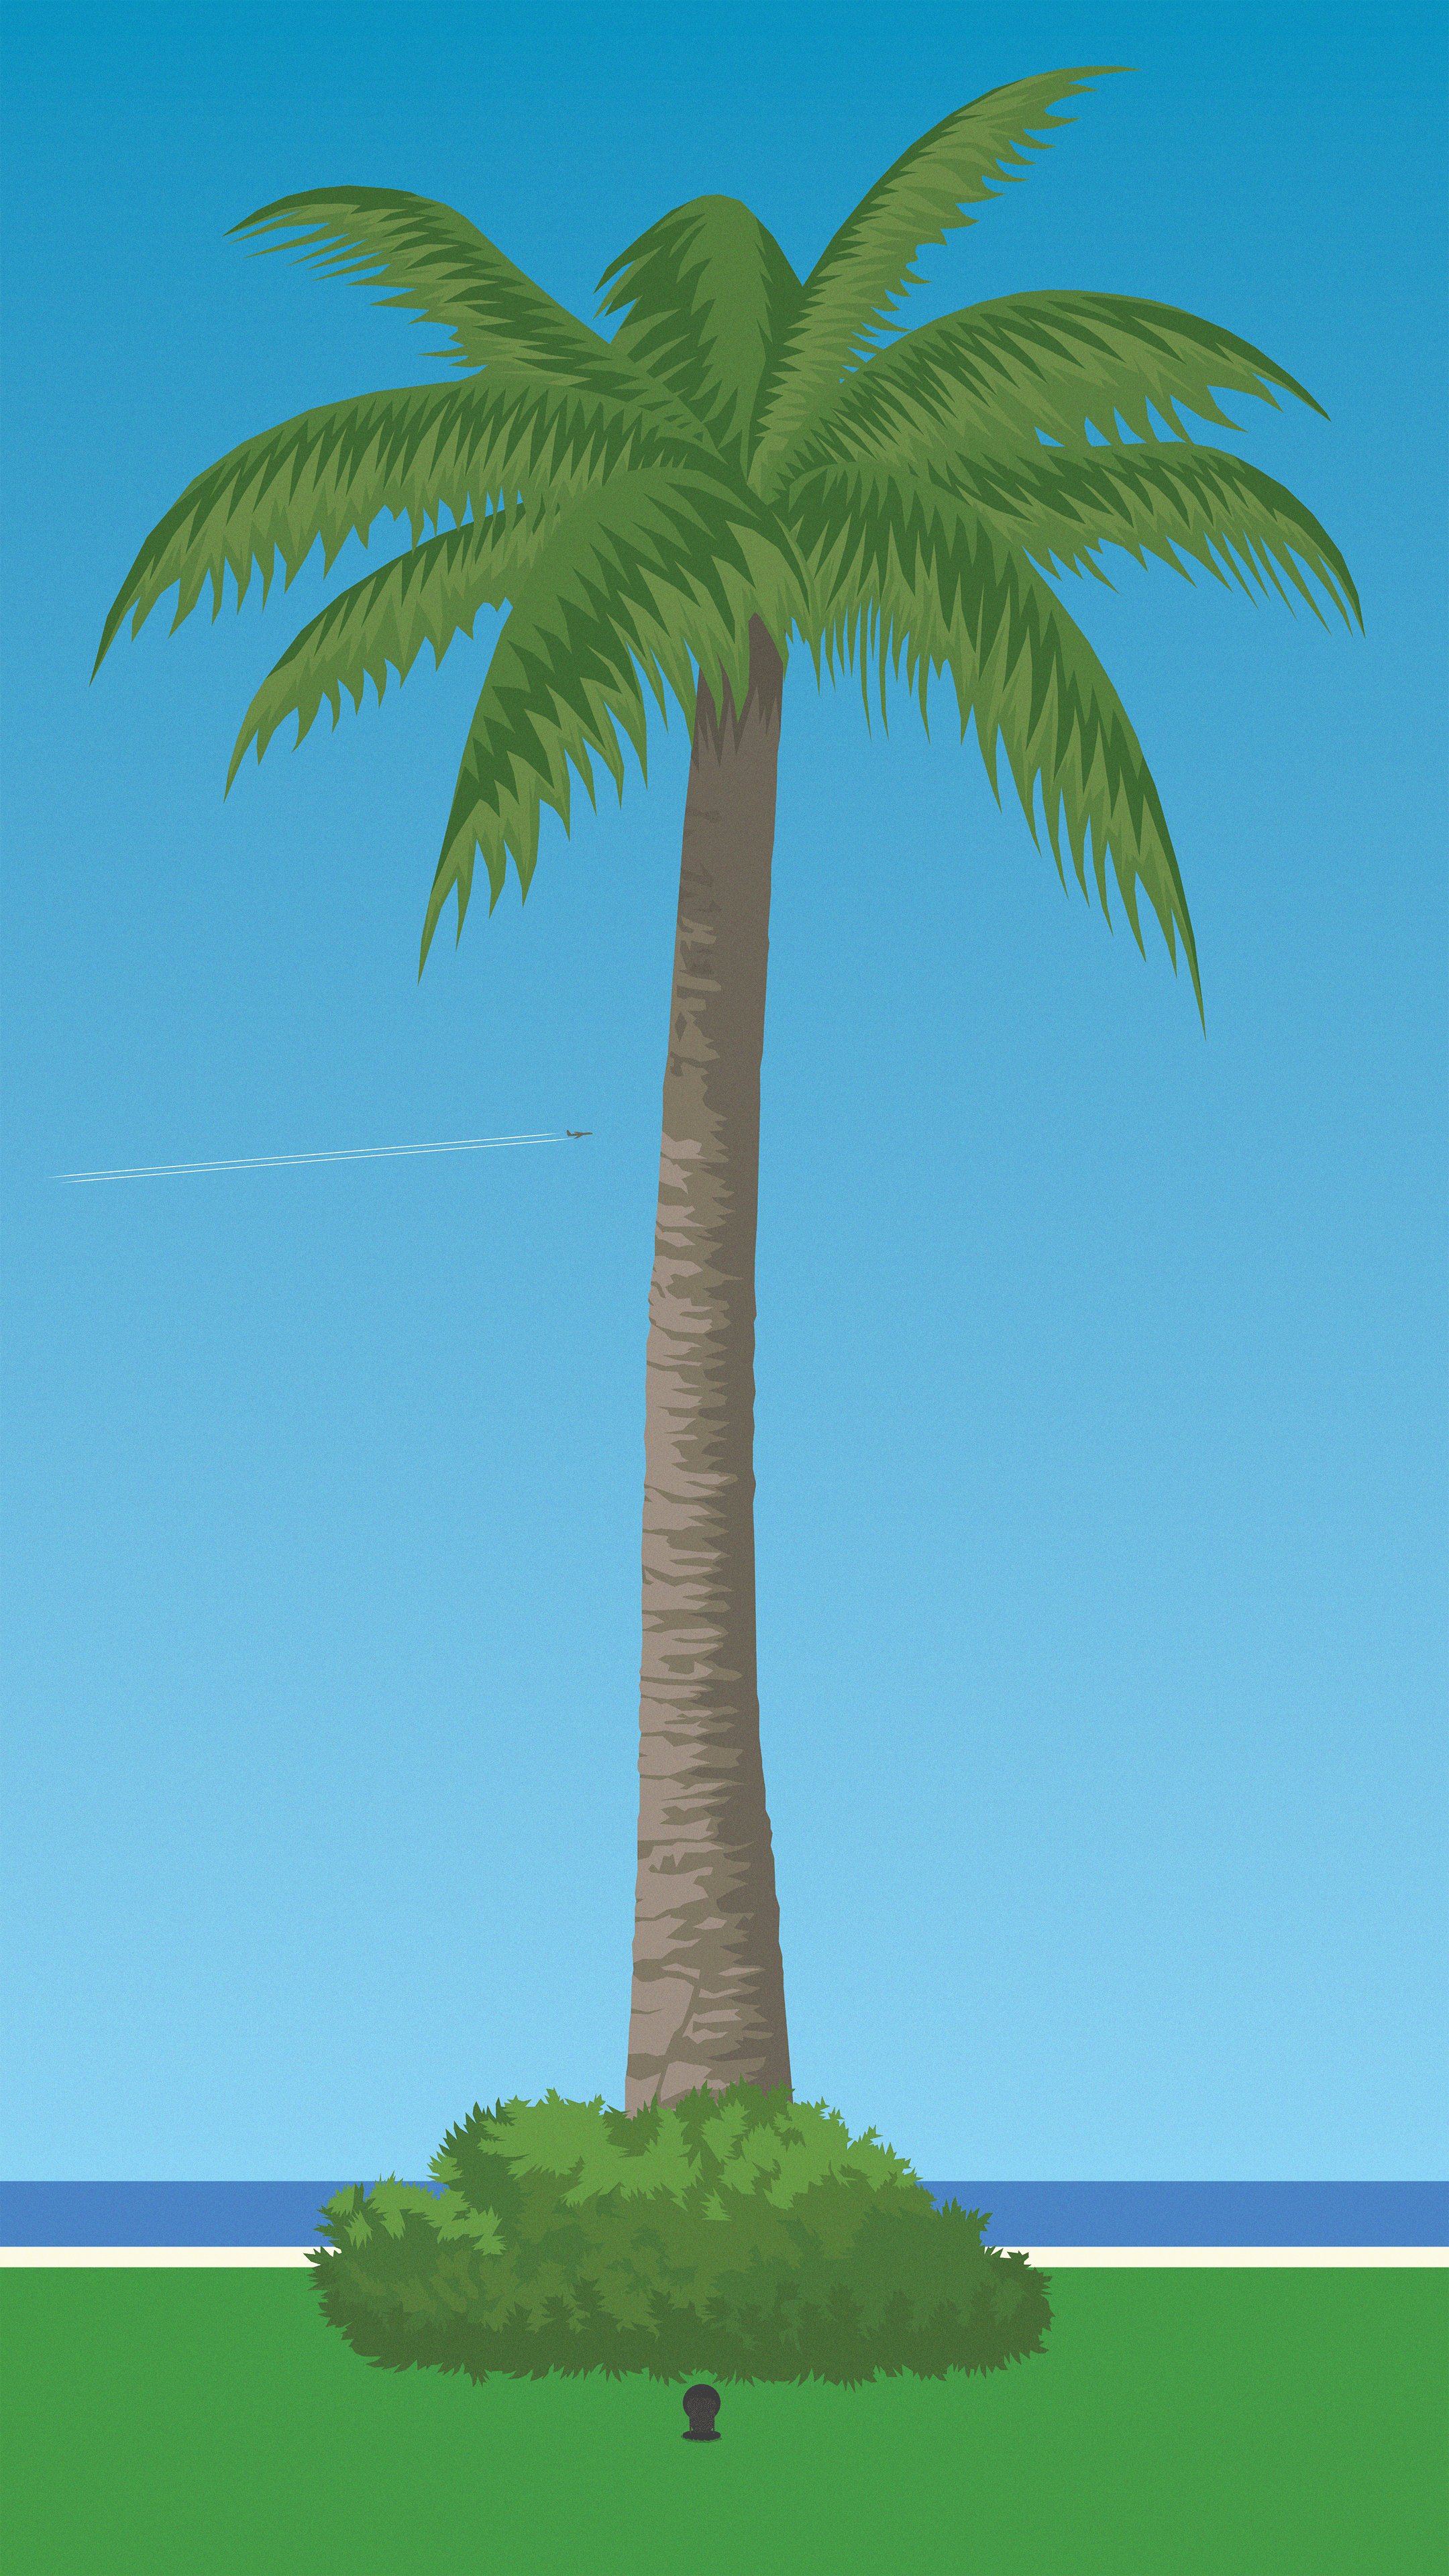 Giant Palm Study